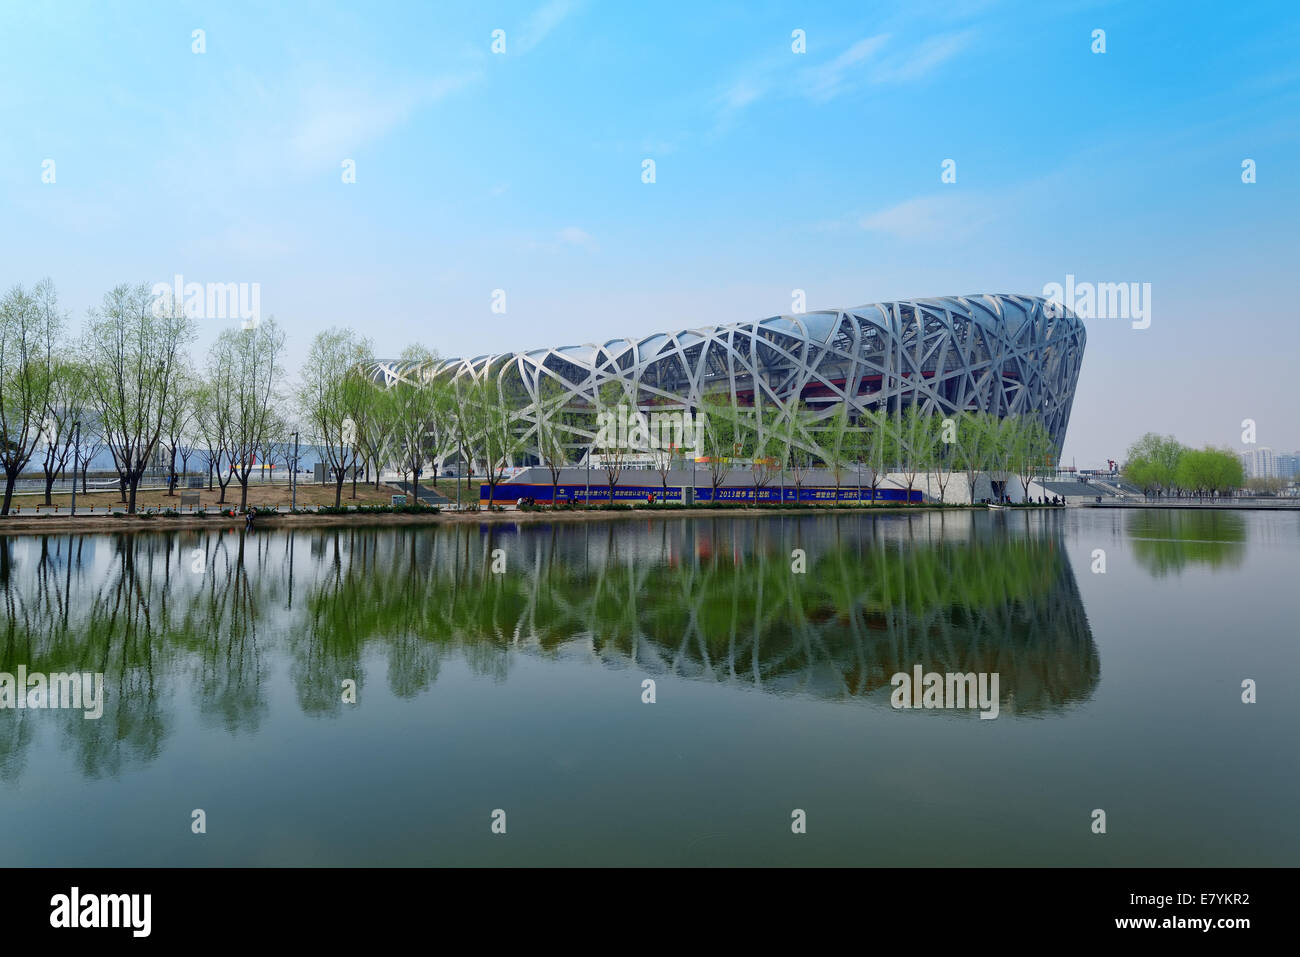 BEIJING, CHINA - APR 7: Estadio Nacional de Pekín con blue sky el 7 de abril de 2013 en Beijing, China. El estadio fue creado para los Juegos Olímpicos y Paralímpicos de Verano de 2008. Foto de stock